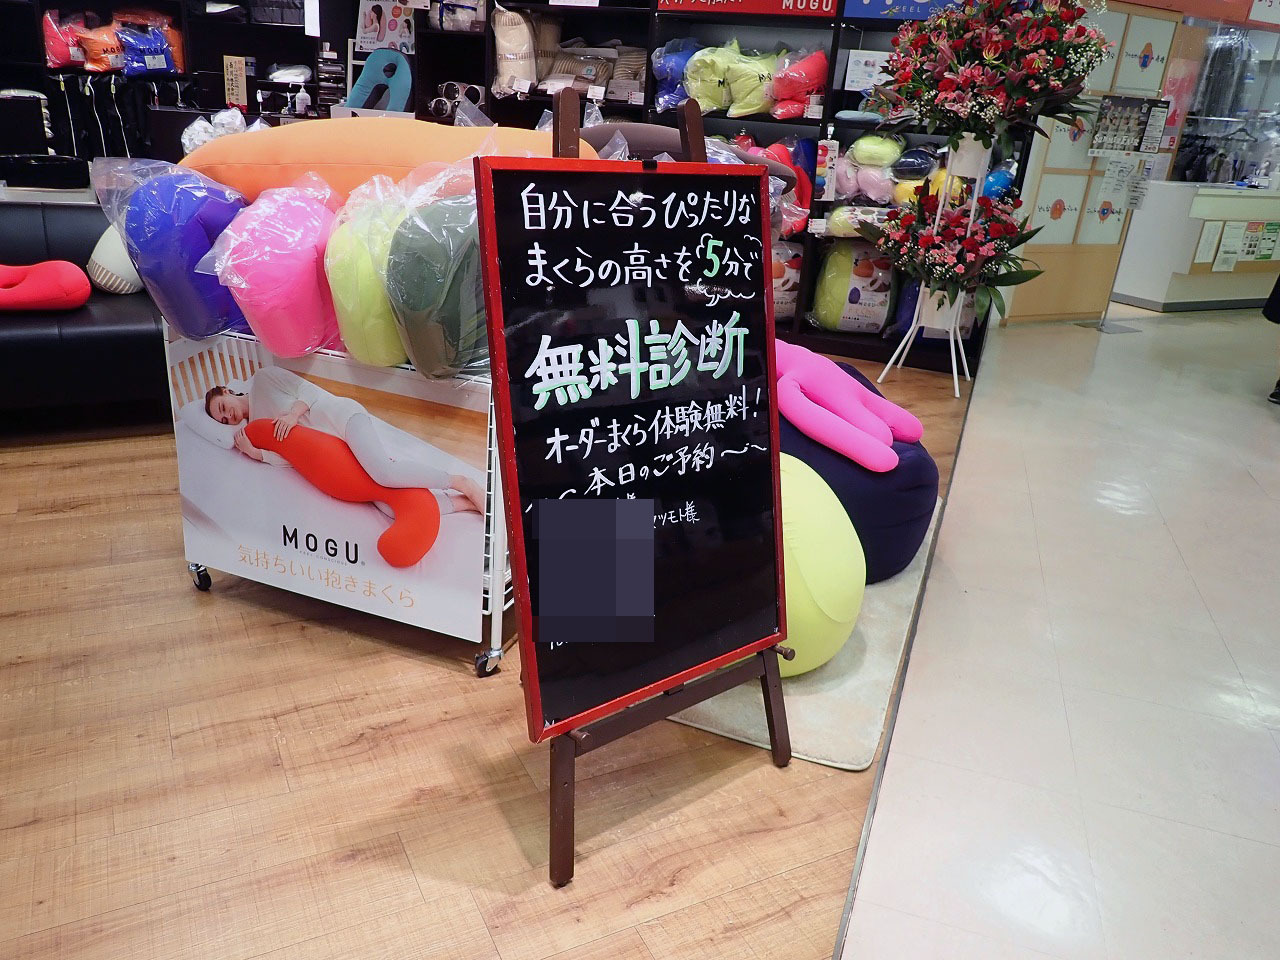 「まくらぼ 西武本川越ペペ店」ではまくらの高さを無料測定してくれます。さらにオーダー枕の体験も無料でできるそうです